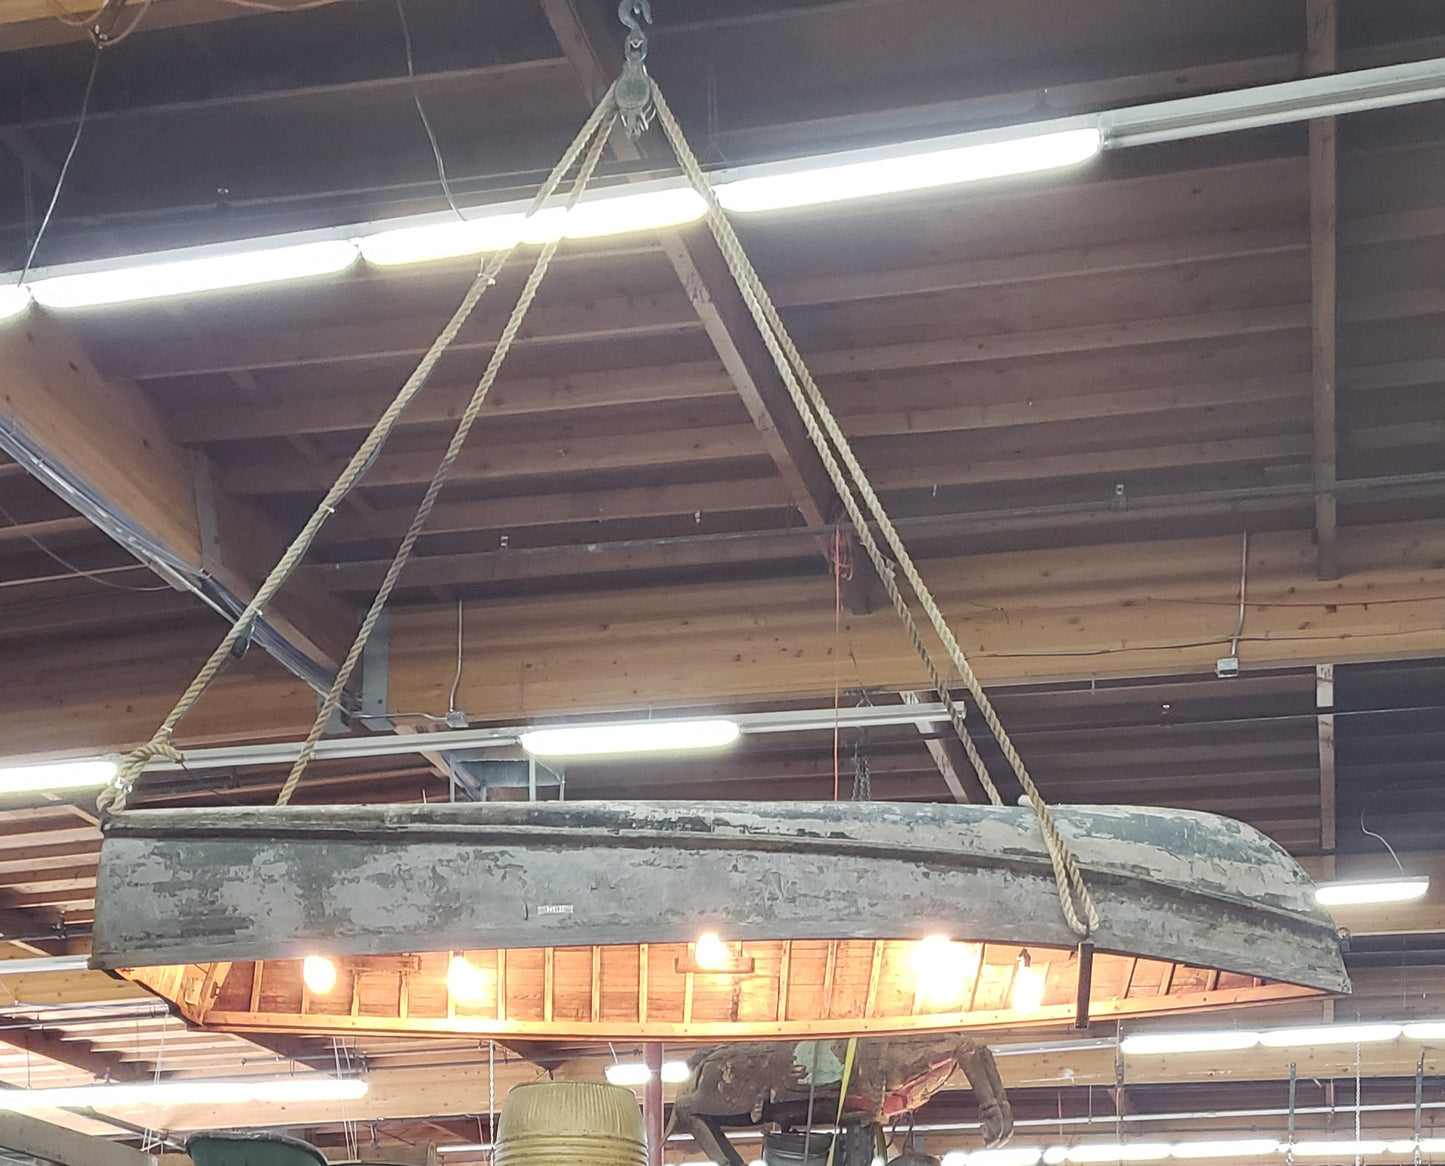 Repurposed Wood Boat Pendant Light